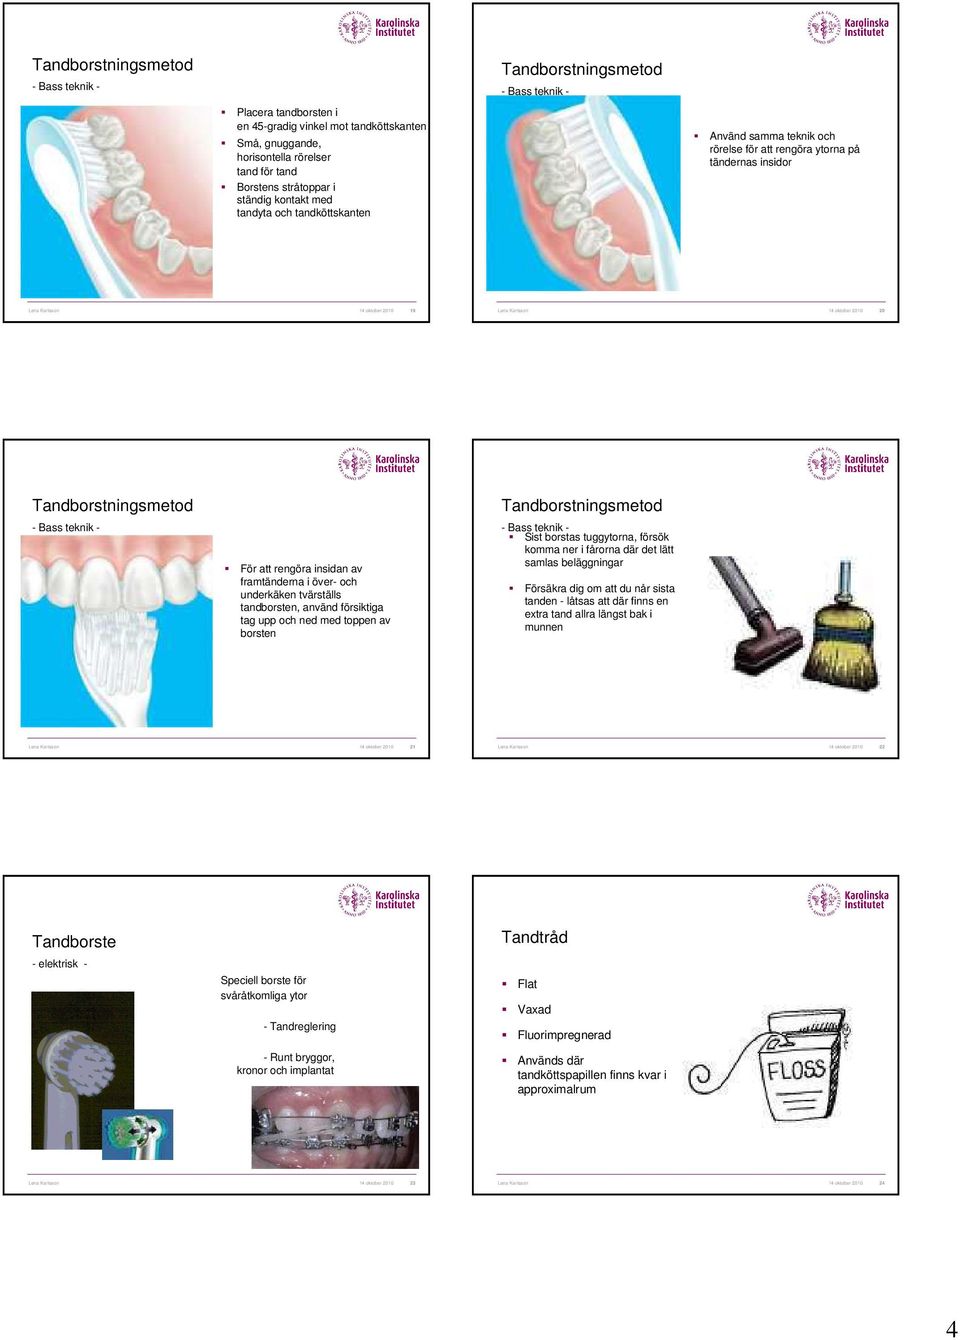 Tandborstningsmetod - Bass teknik - För att rengöra insidan av framtänderna i över- och underkäken tvärställs tandborsten, använd försiktiga tag upp och ned med toppen av borsten Tandborstningsmetod